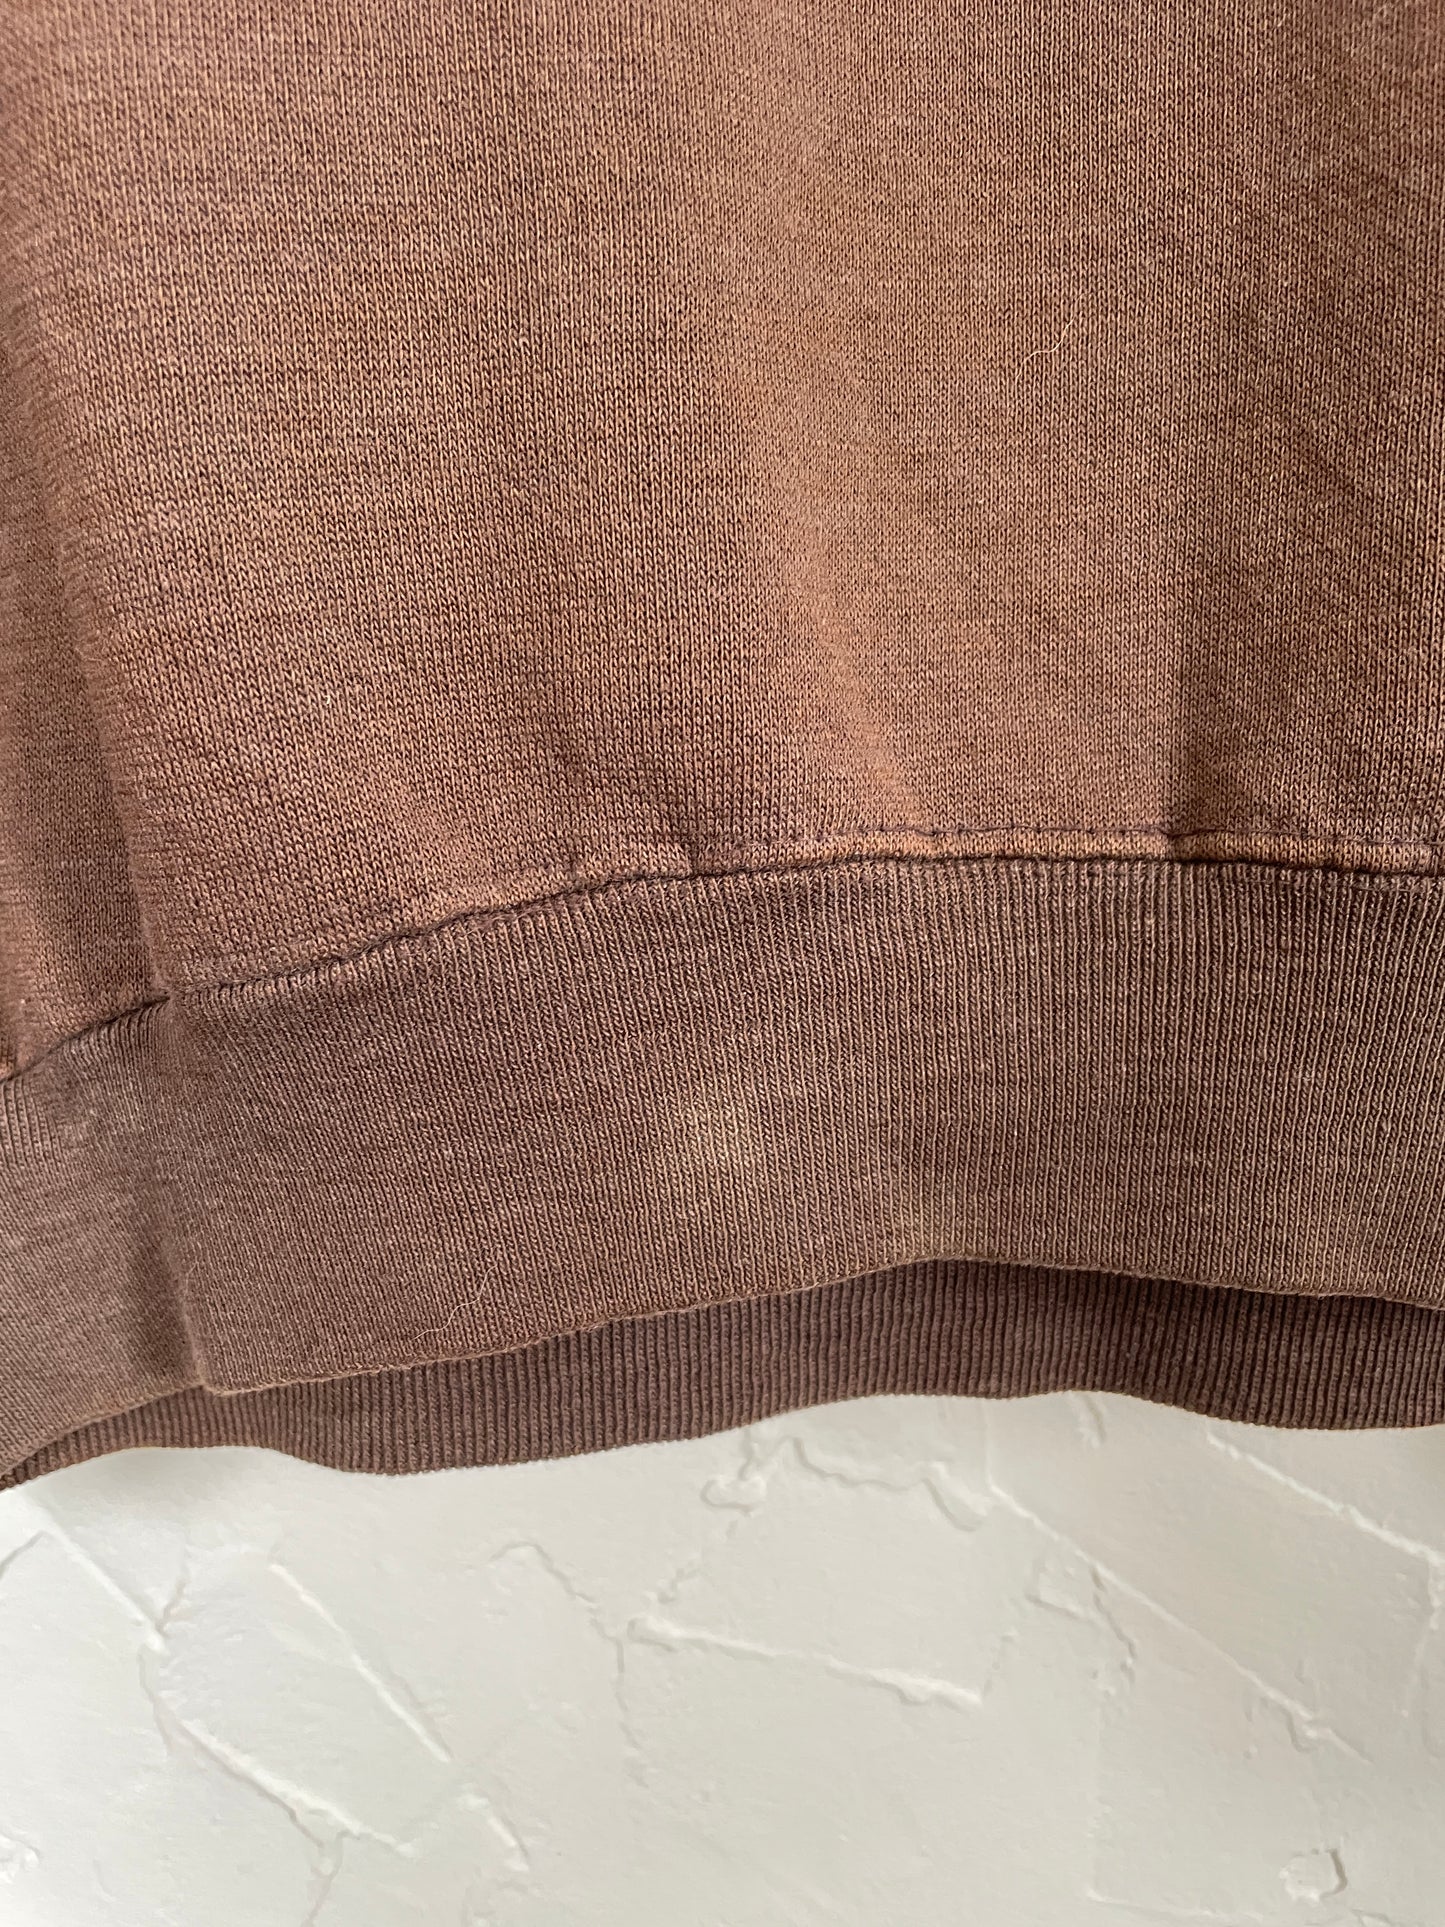 70s Blank Brown Sweatshirt